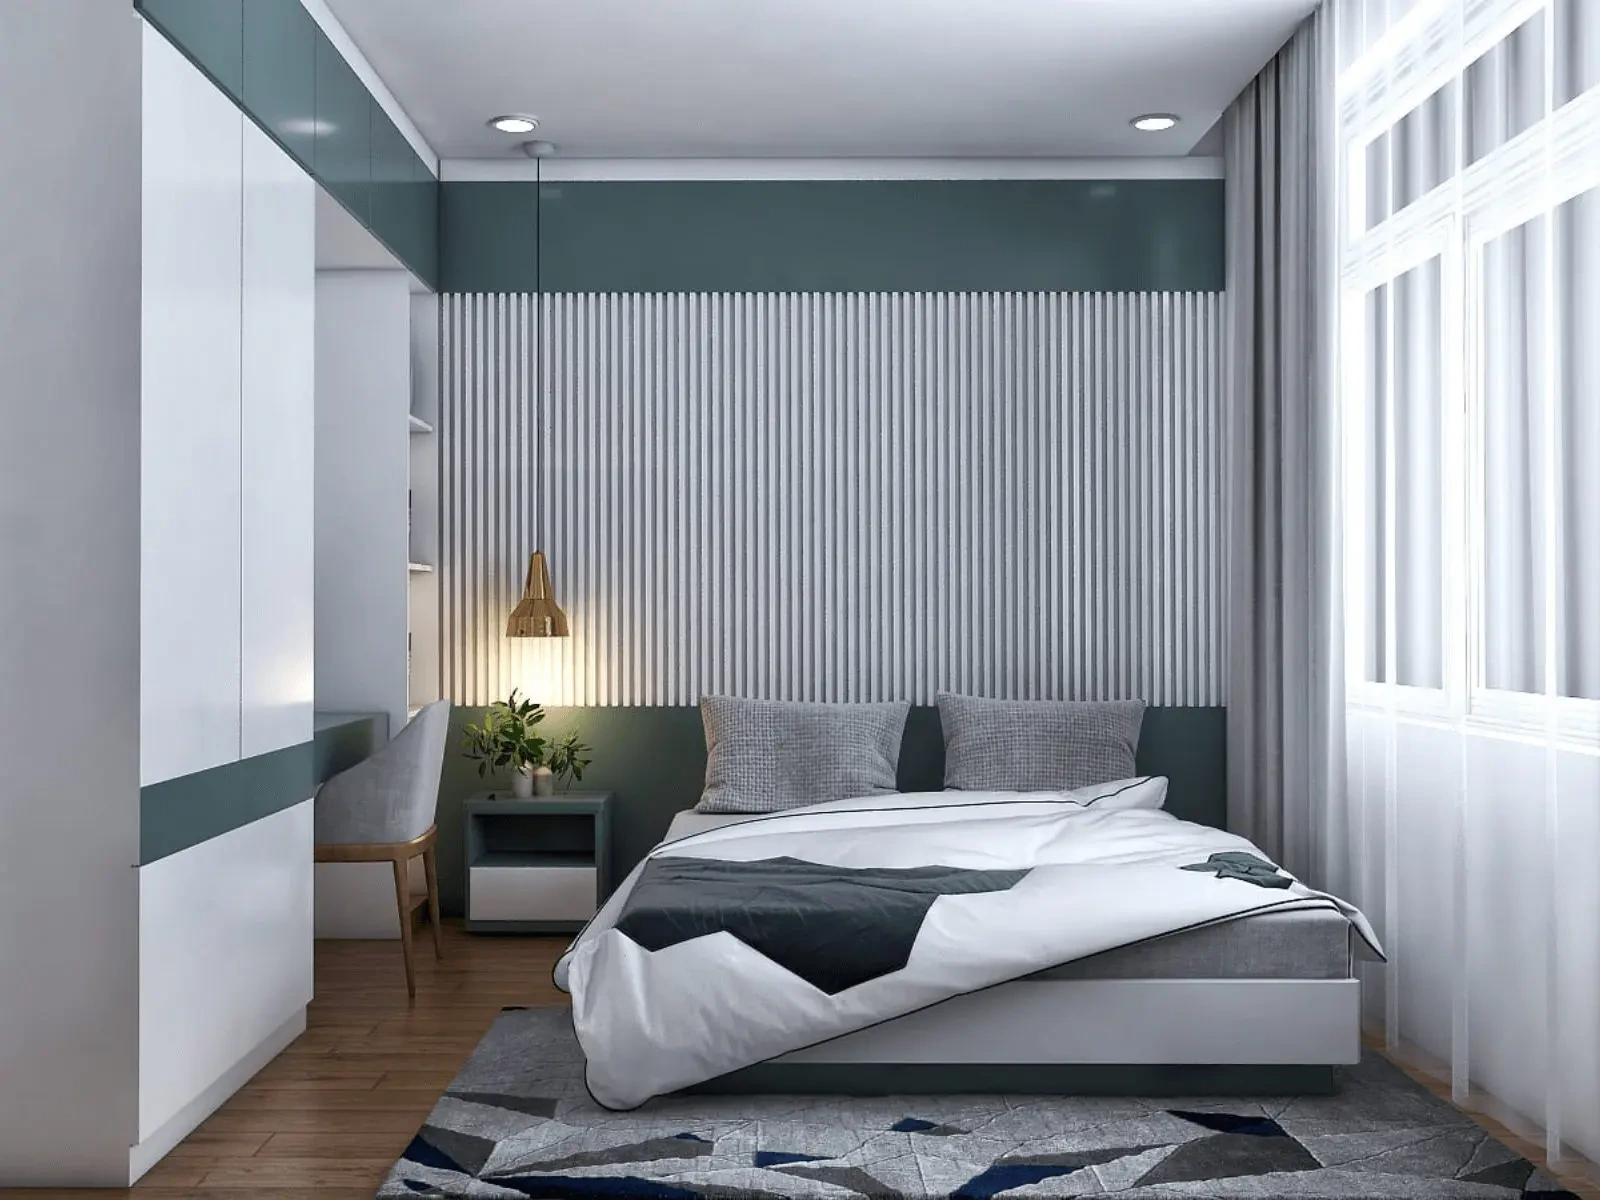 Sử dụng màu sắc tối giản cho phòng ngủ